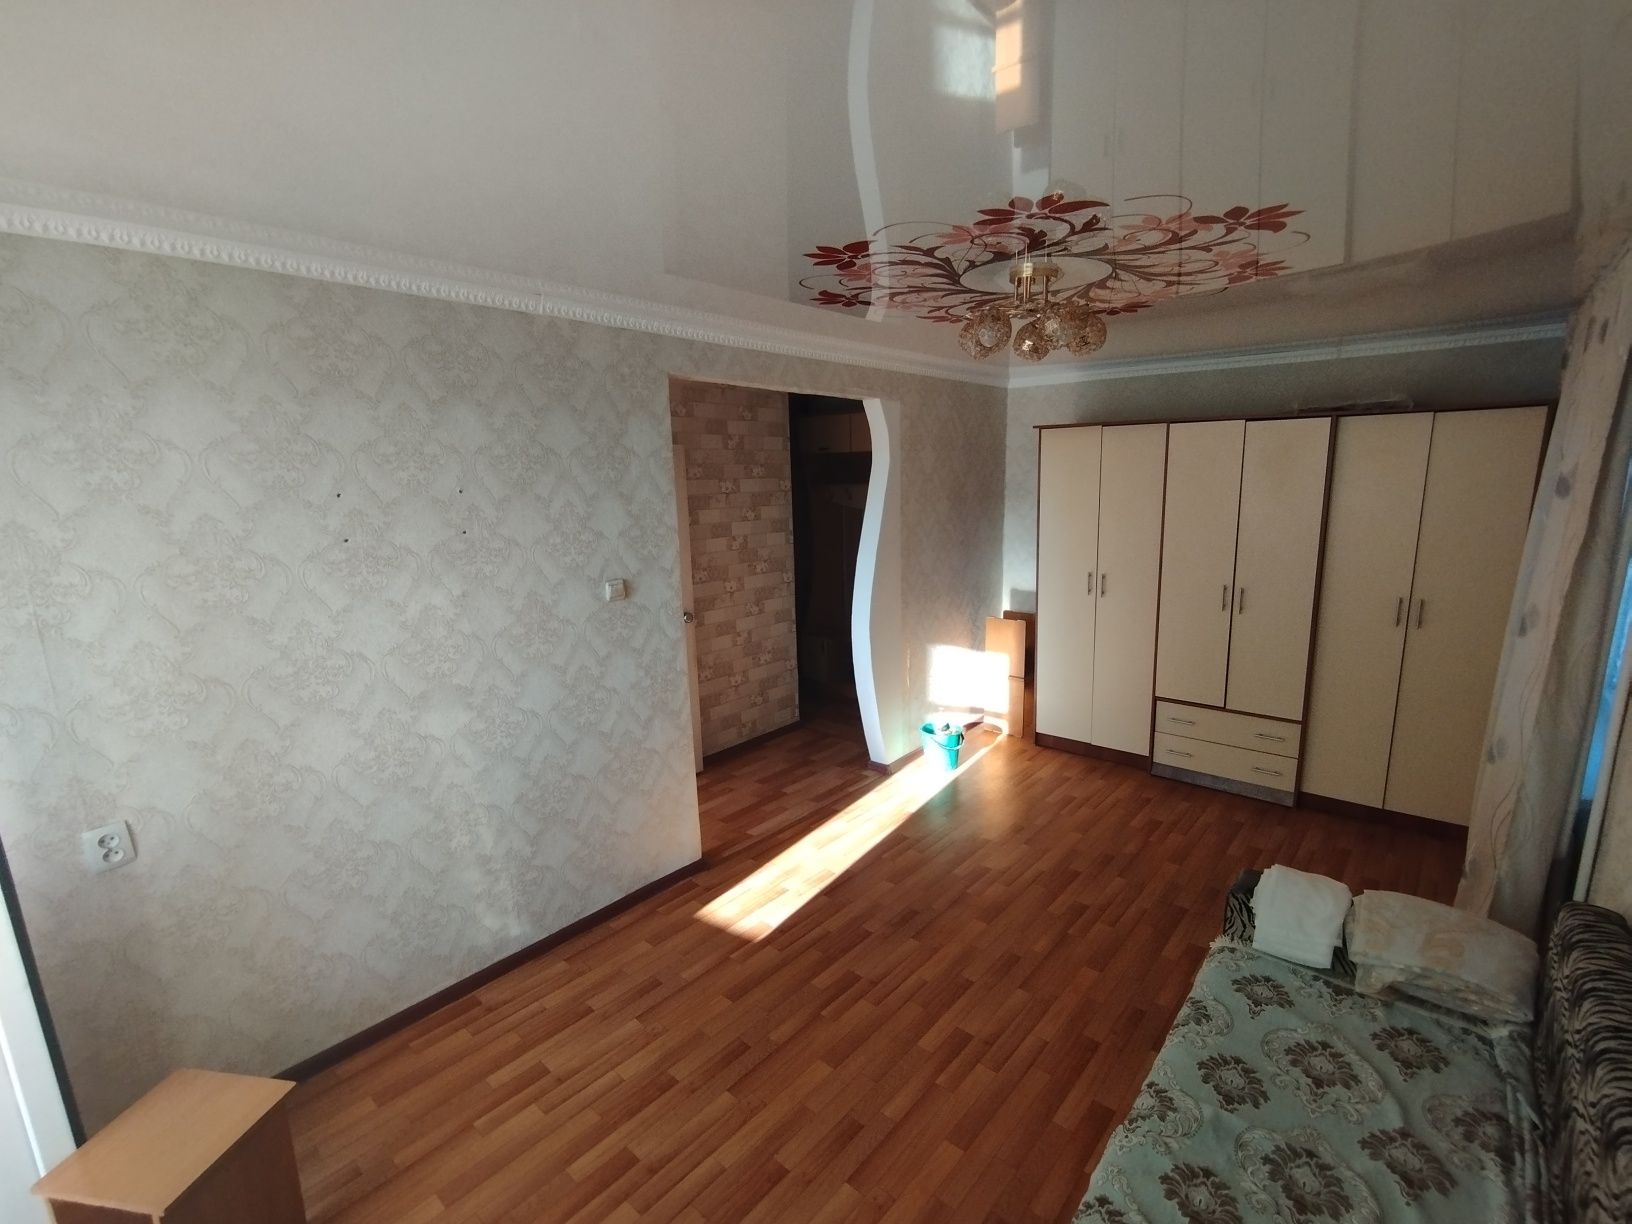 Продам 1 комнатную квартиру в городе Аягоз.